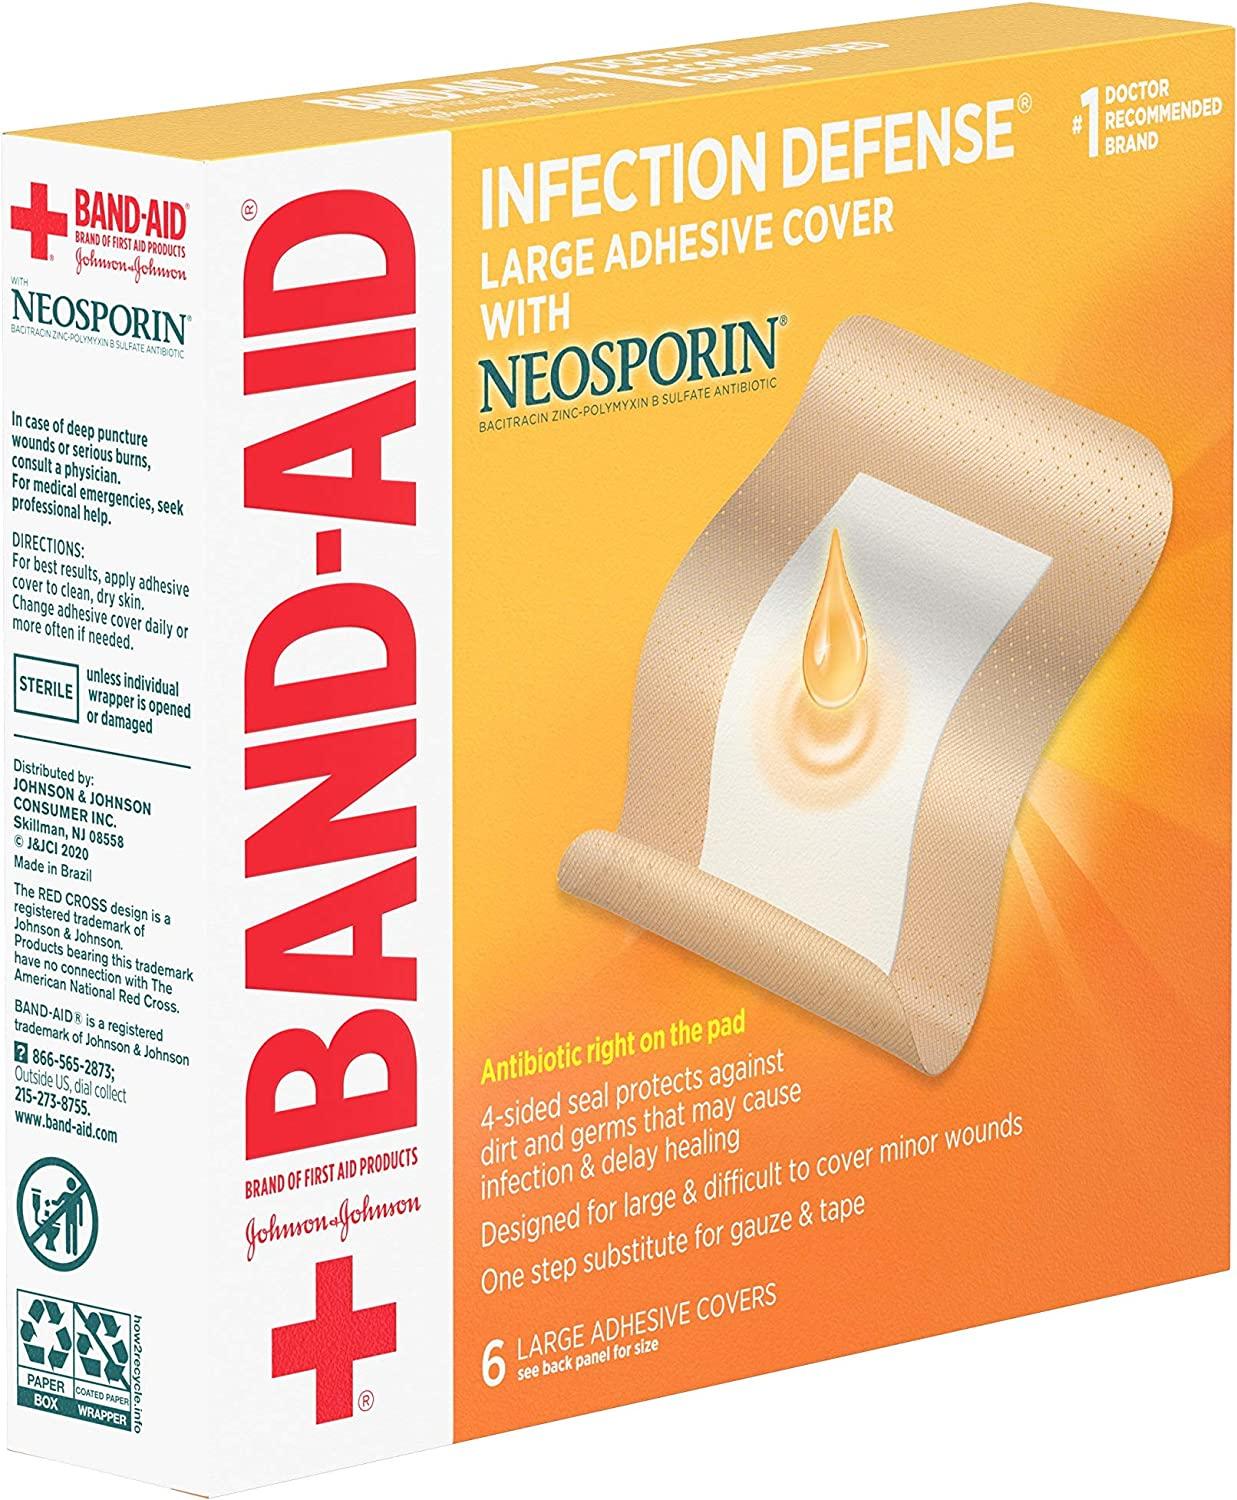 Johnson & Johnson 005567 Band-Aid Brand Adhesive Bandages with Neospor –  woundcareshop